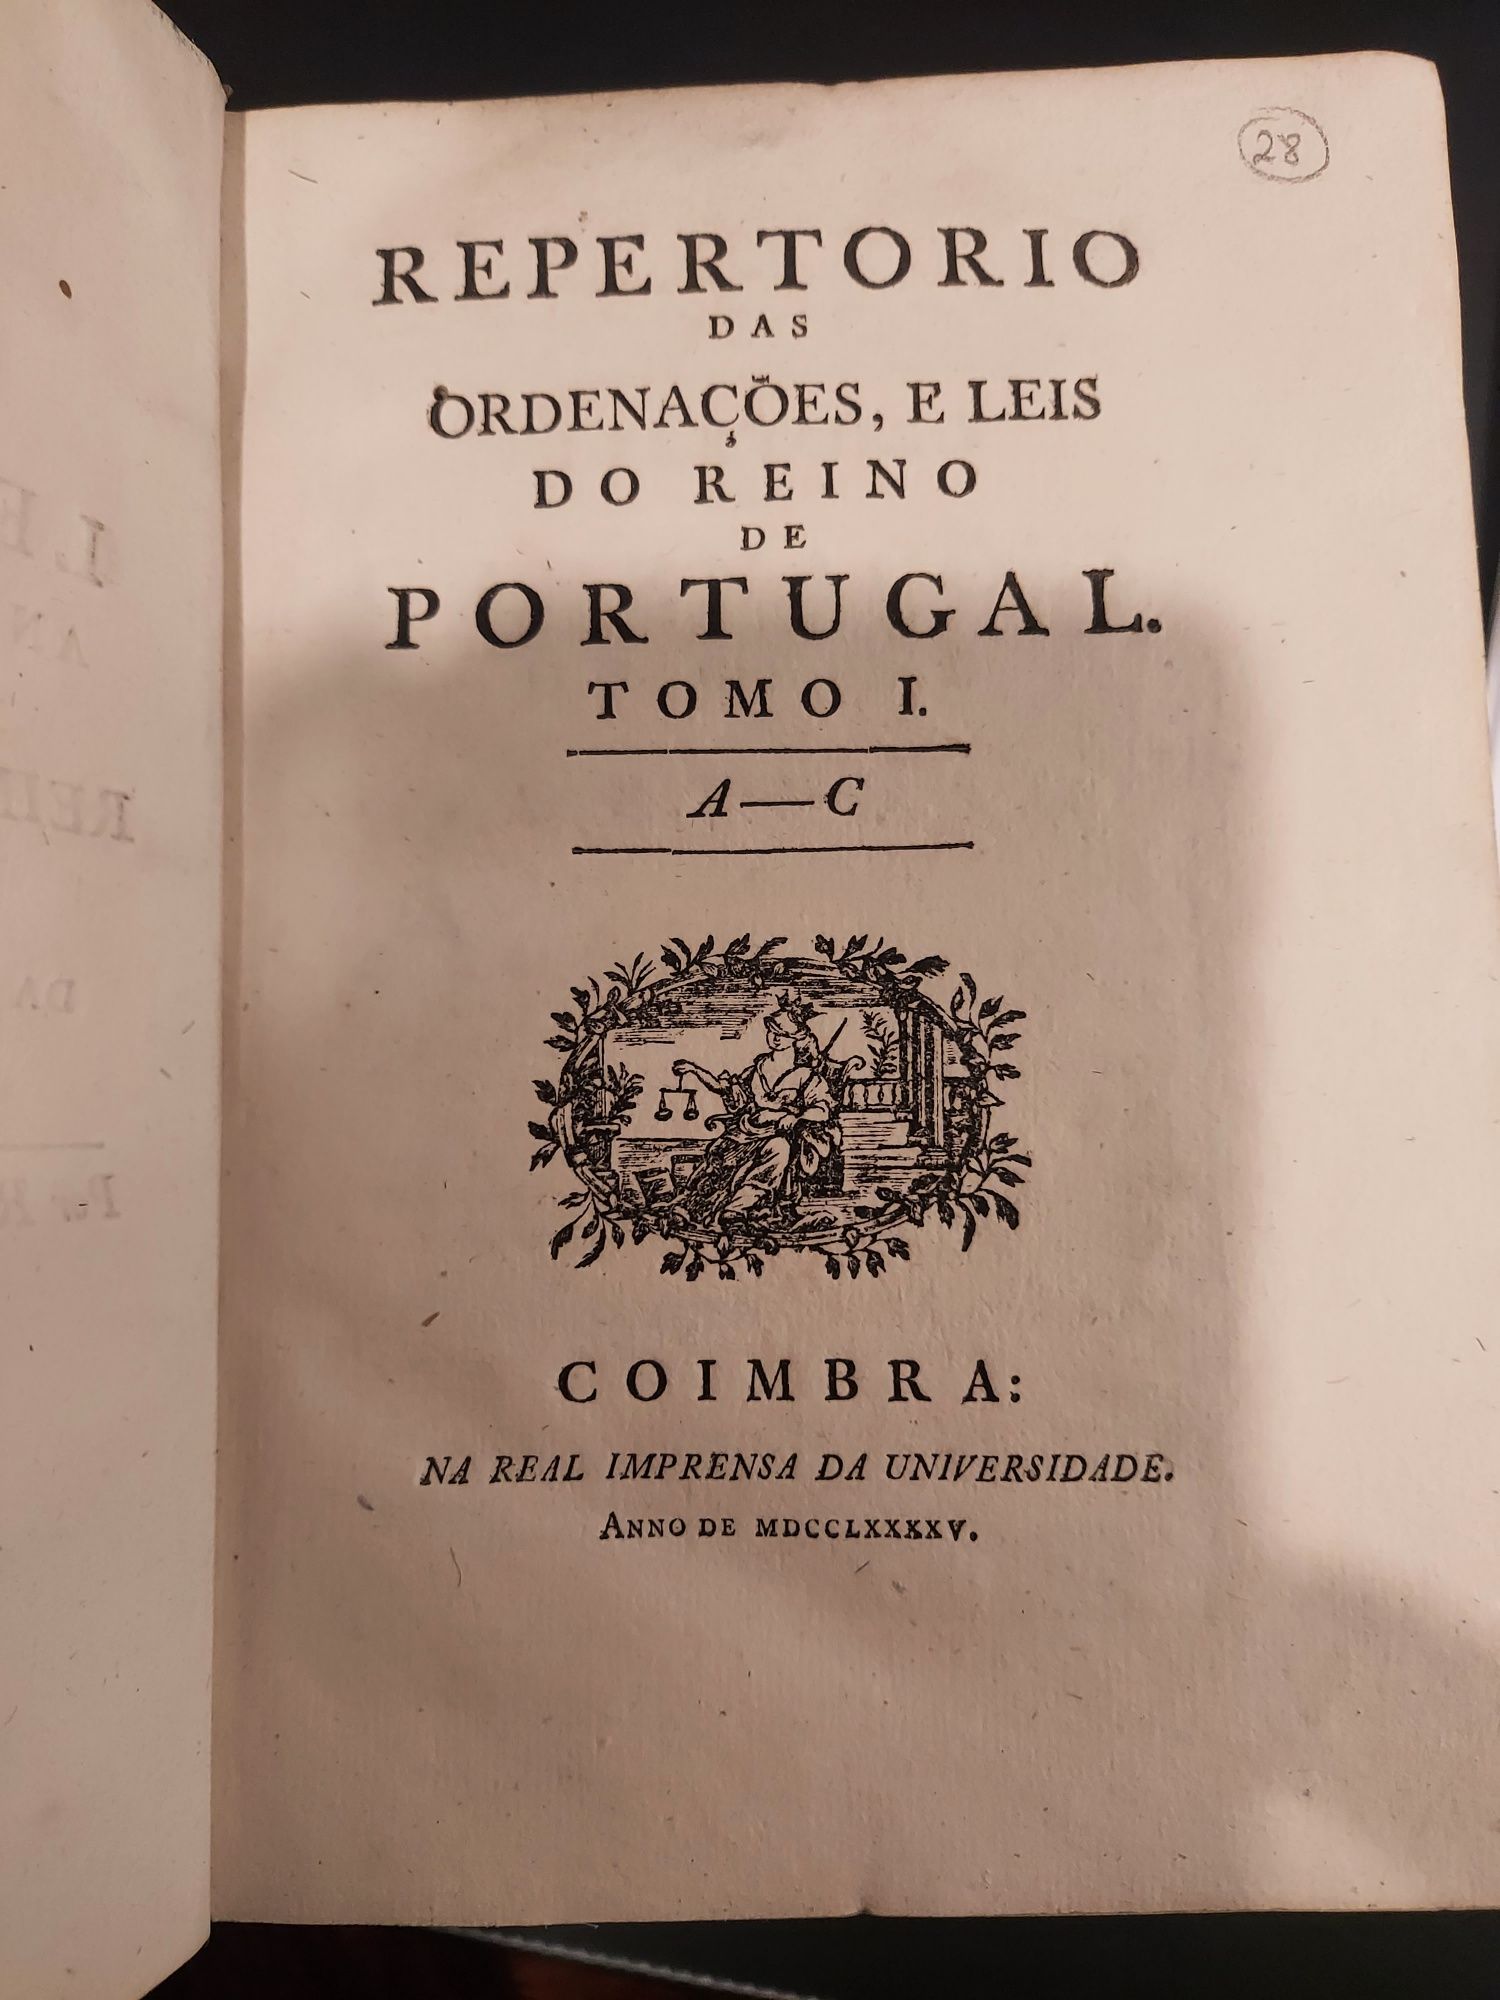 Repertorio das Ordenações e Leis do Reino de Portugal, 4 Tomos, 1795co